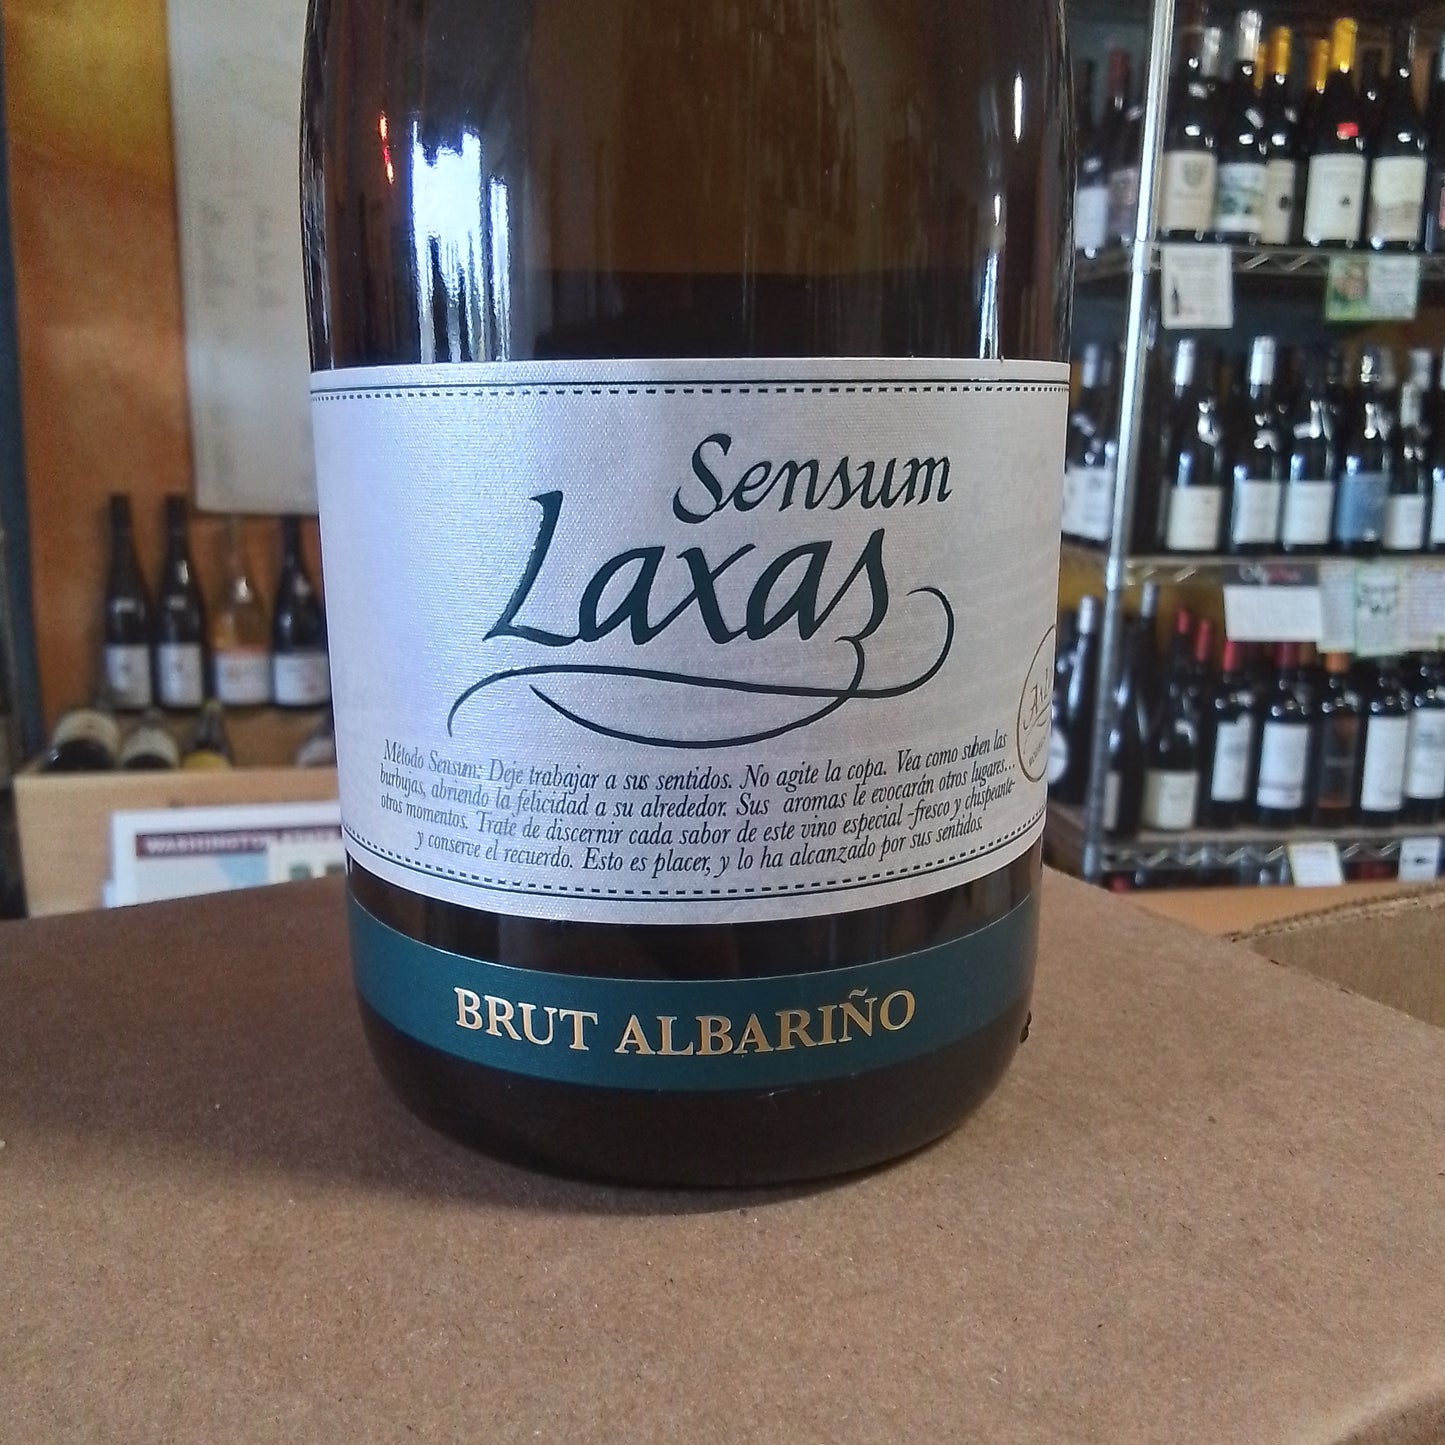 BODEGAS AS LAXAS NV Brut Albarino Sparkling Wine 'Sensum' (Rias Baixas, Spain)